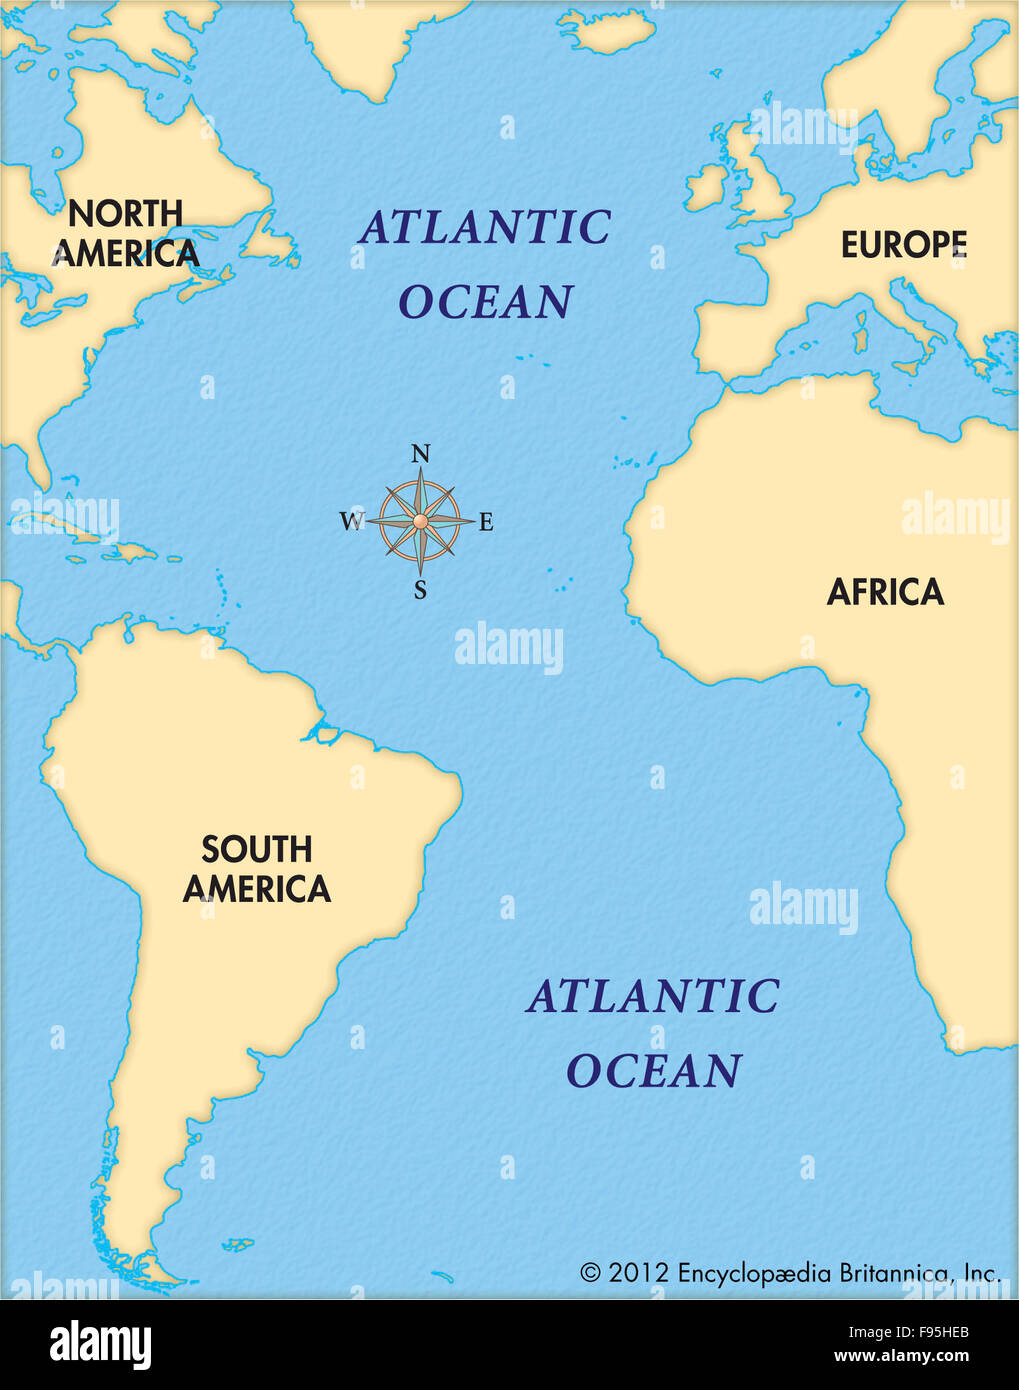 Geografia della cartografia delle mappe dell'oceano atlantico immagini e  fotografie stock ad alta risoluzione - Alamy